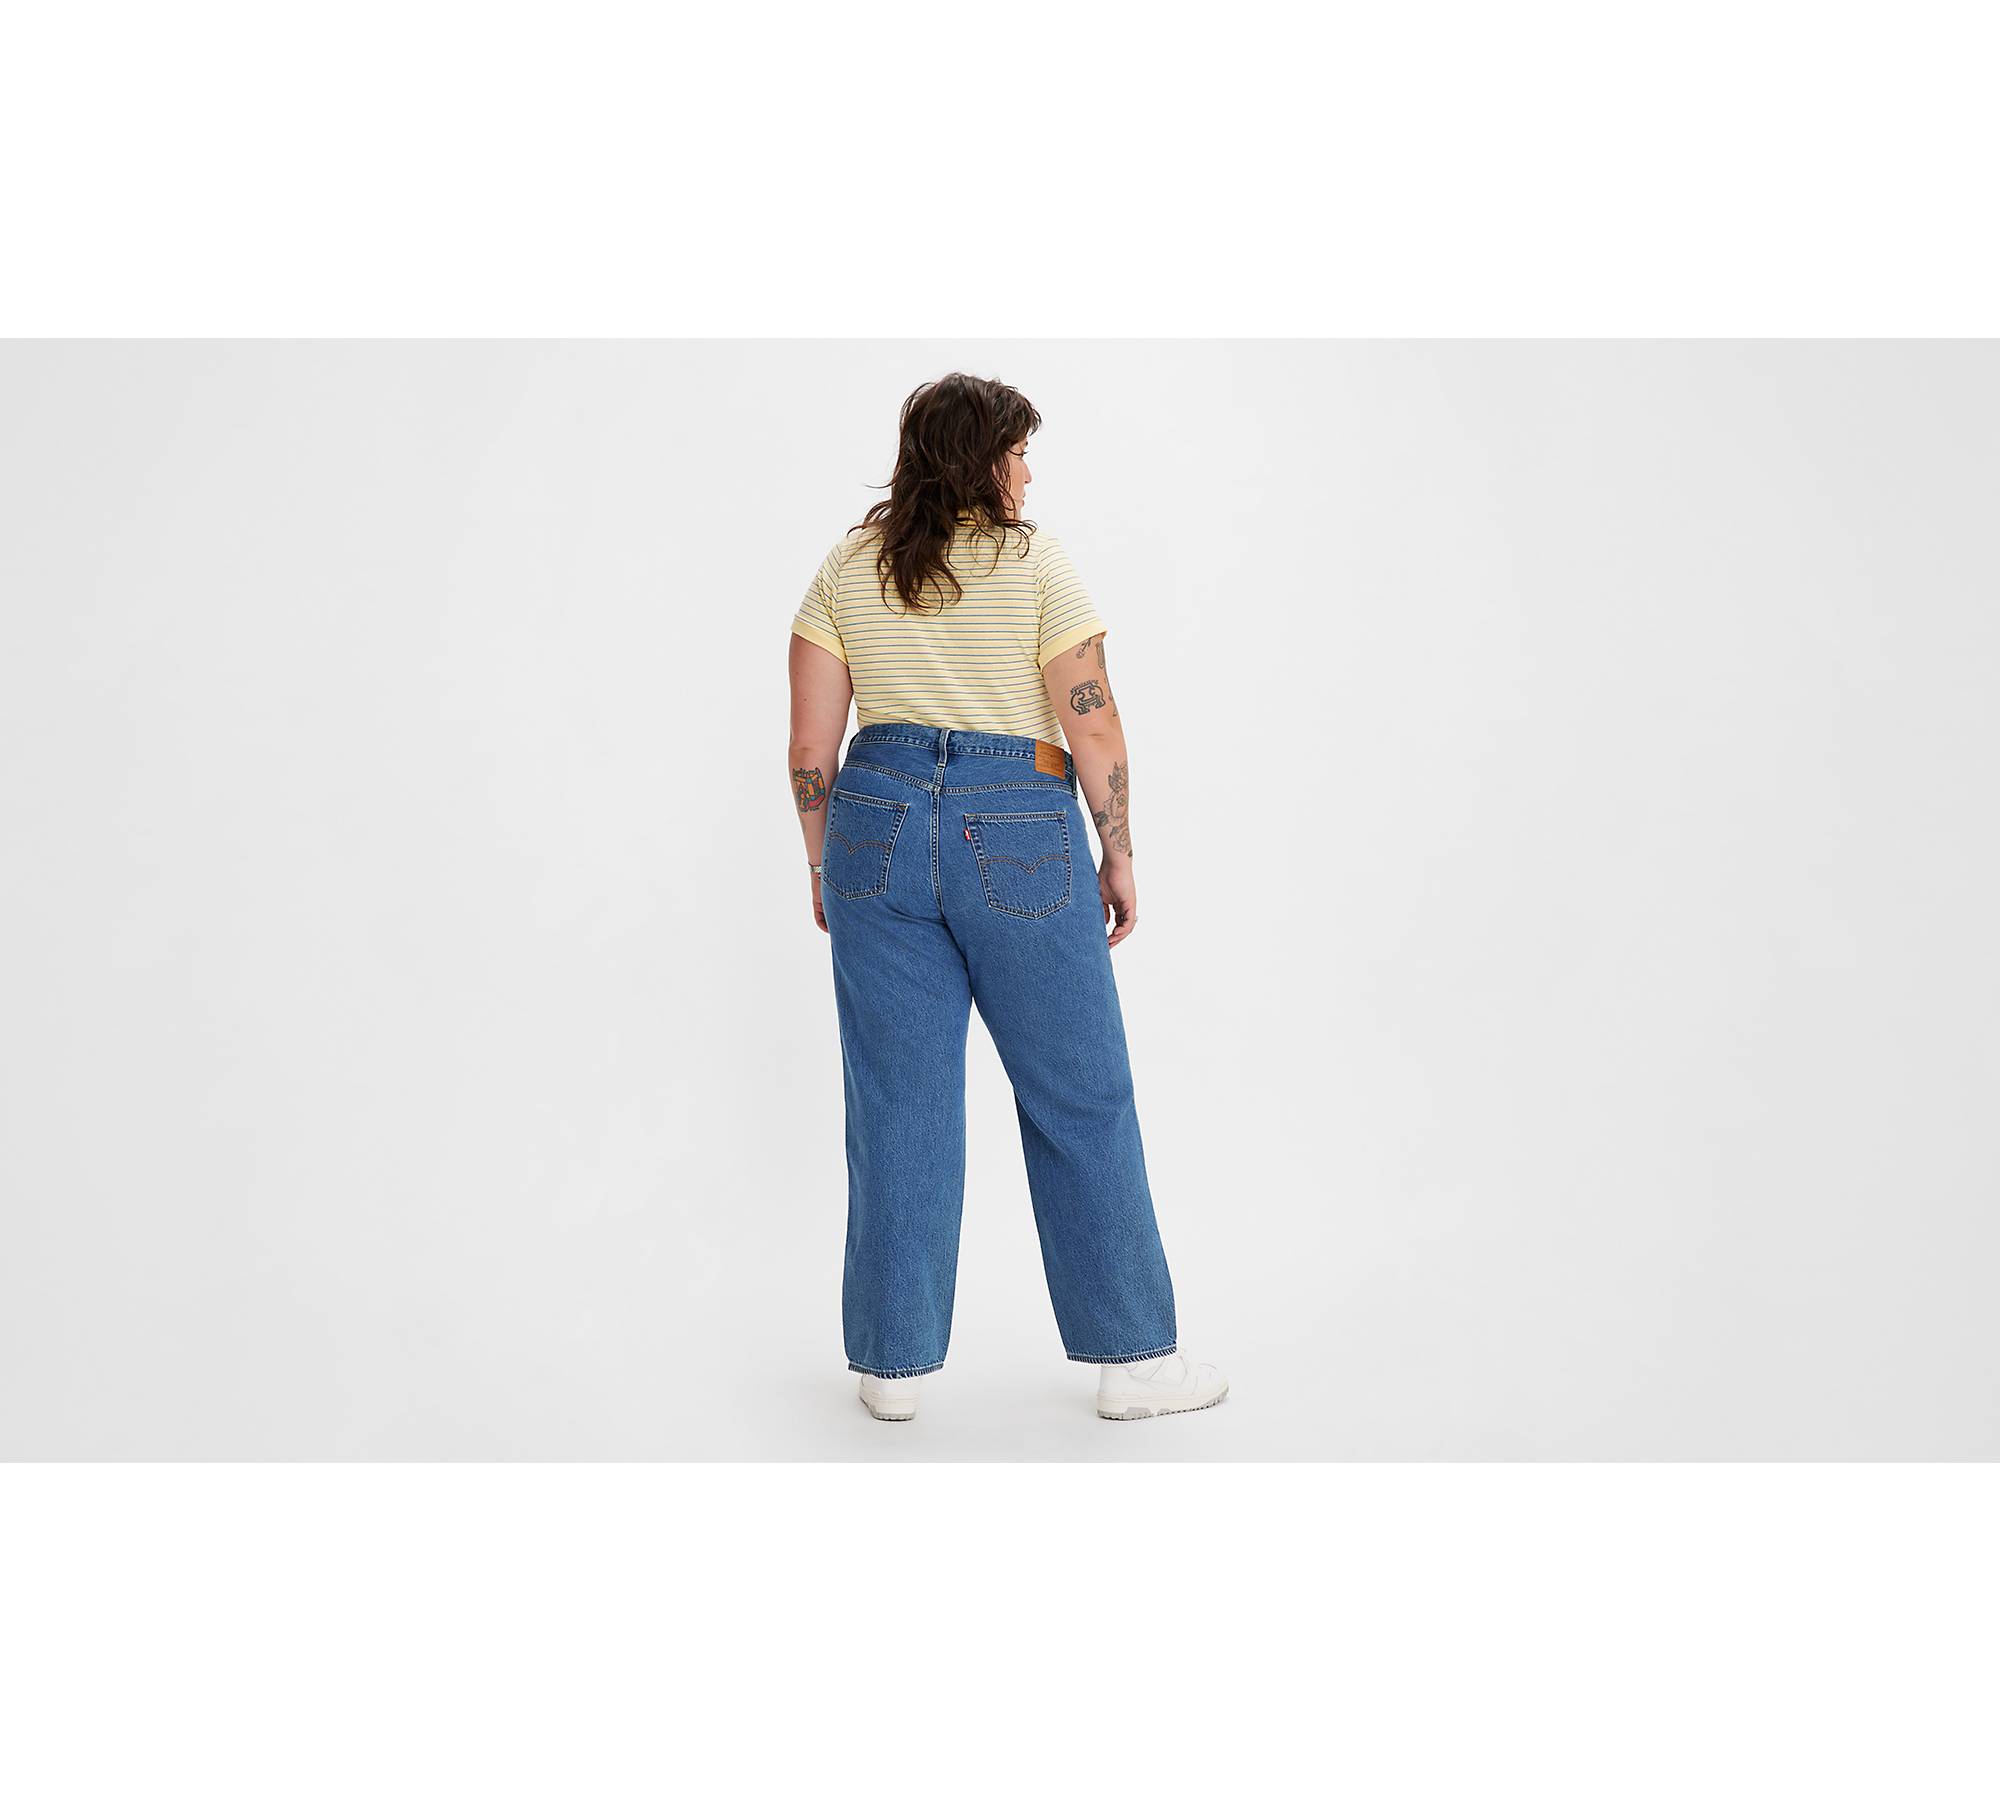 94 Baggy Women's Jeans (plus Size) - Light Wash